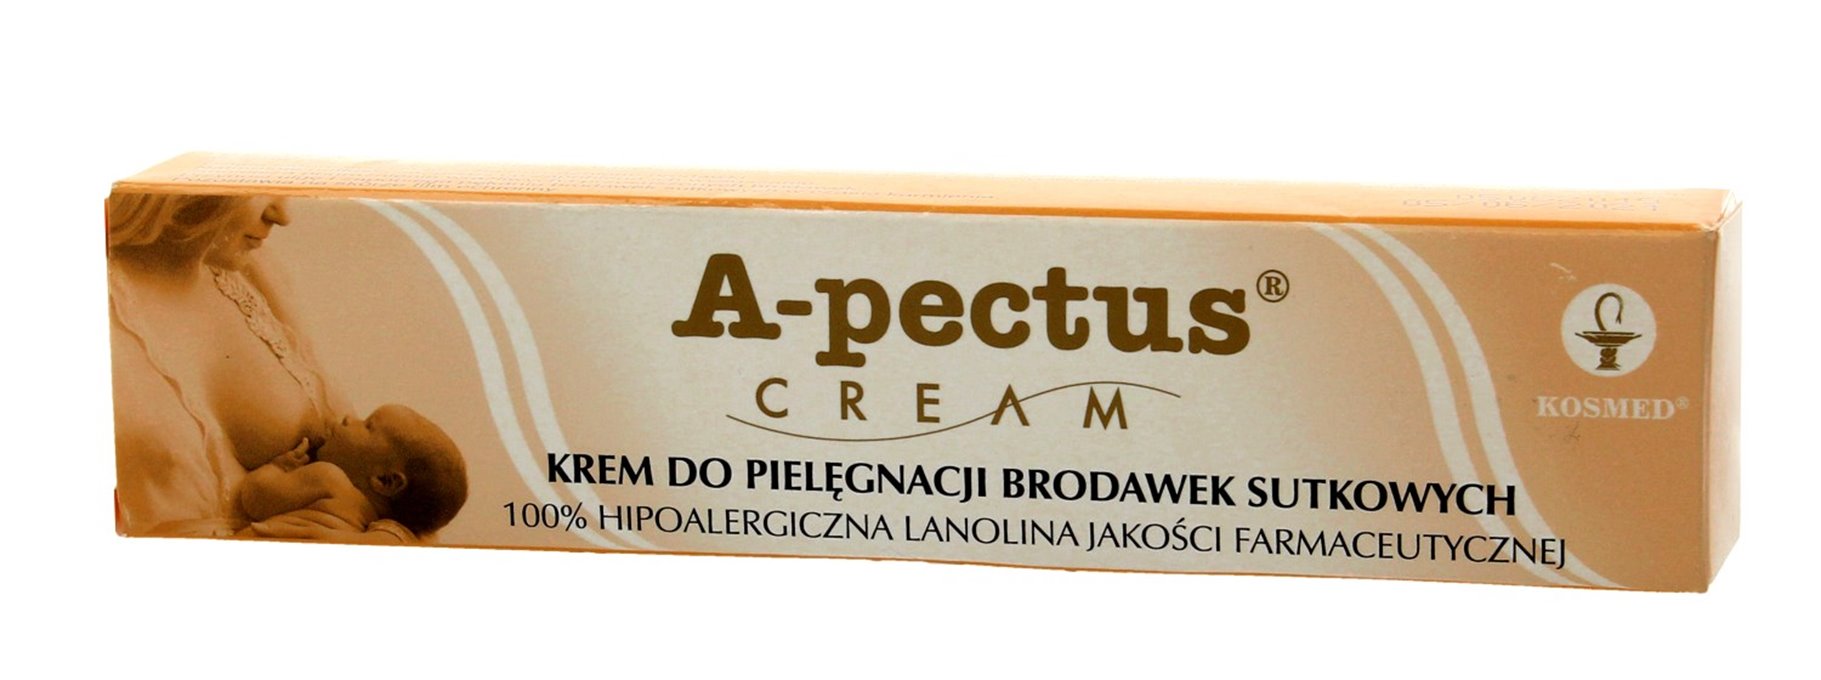 Kosmed A-pectus Krem do pielęgnacji brodawek sutkowych  15ml